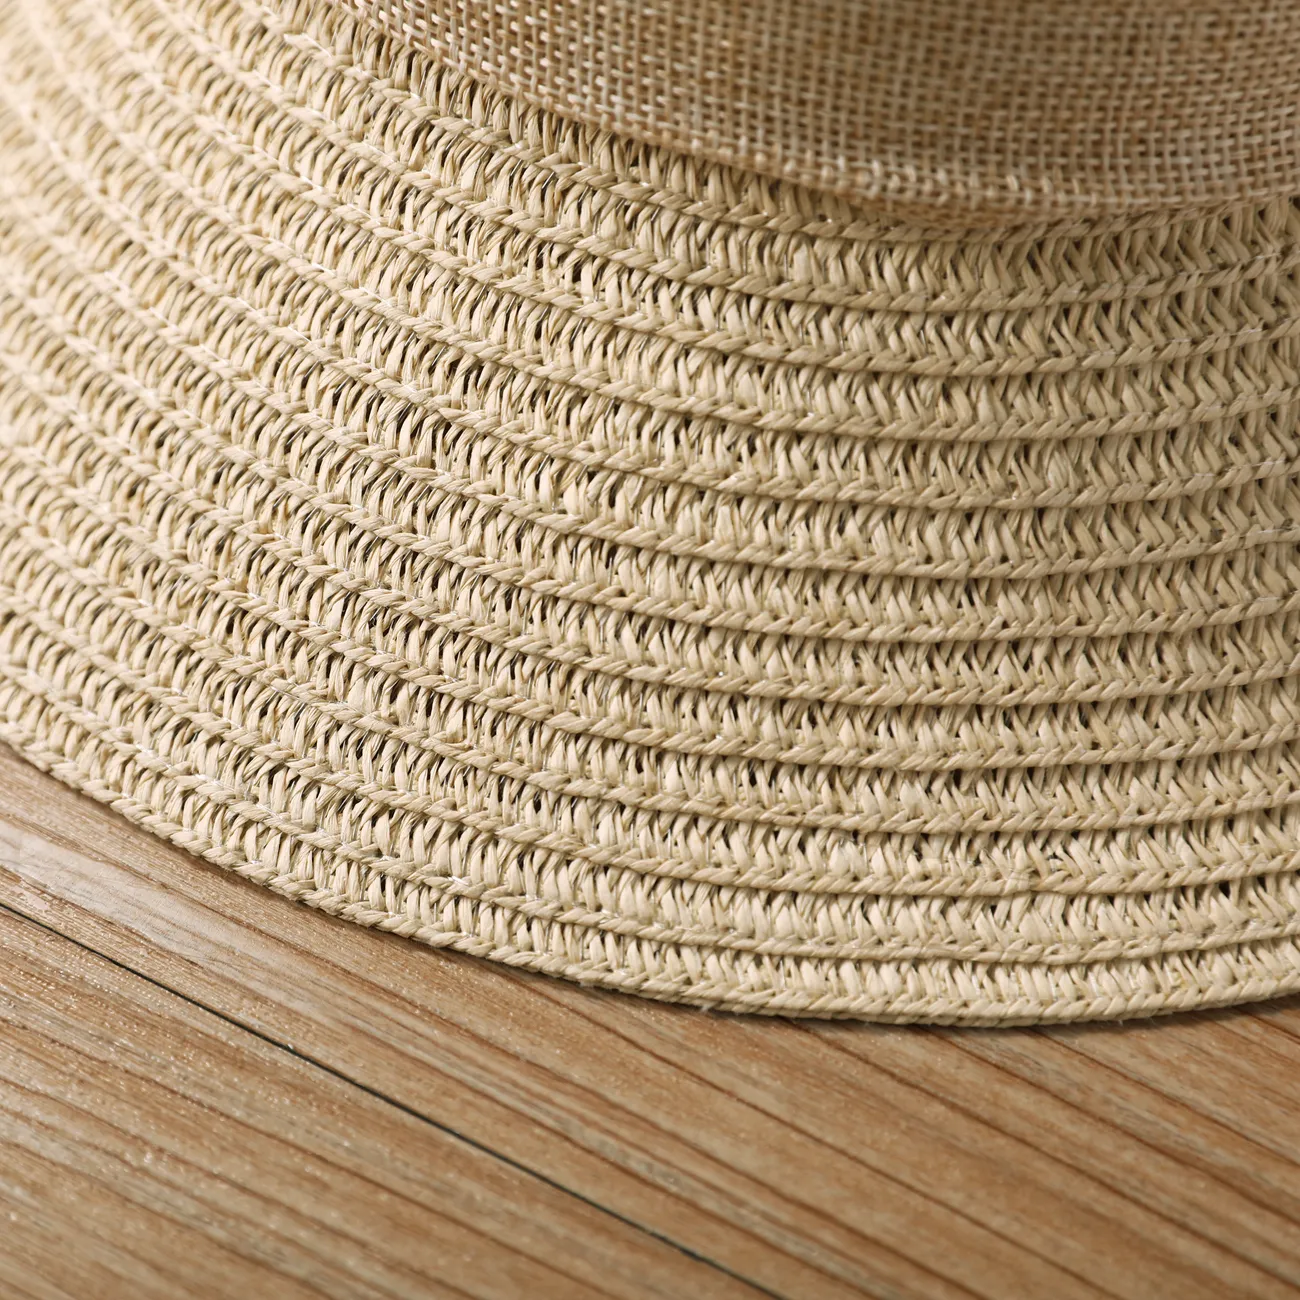 Sombrero de verano para el sol para niñas con moño y ala enrollada, sombrero de paja de playa para viajes y vacaciones Beige big image 1